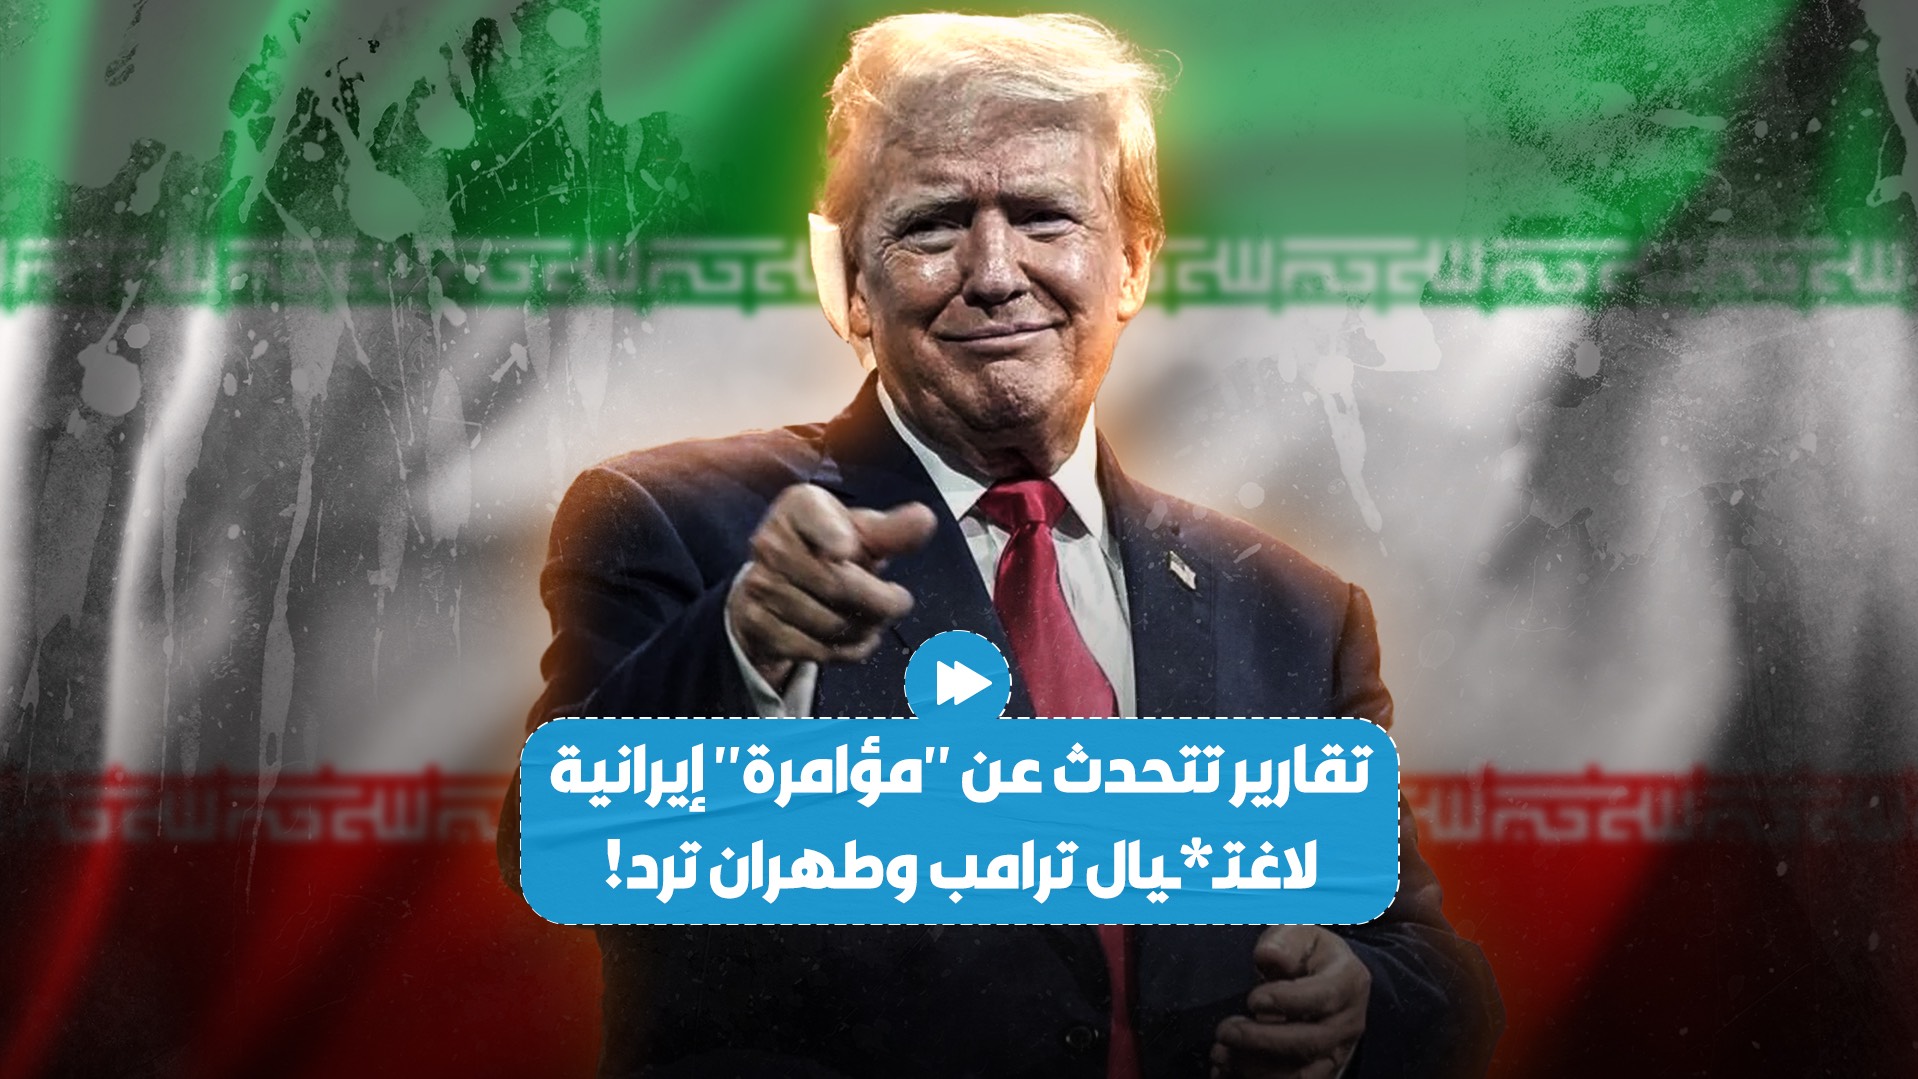 تقارير أمريكية تتحدث عن "مؤامرة إيرانية" لاغتـ،ـيا*ل دونالد ترامب.. وطهران ترد..